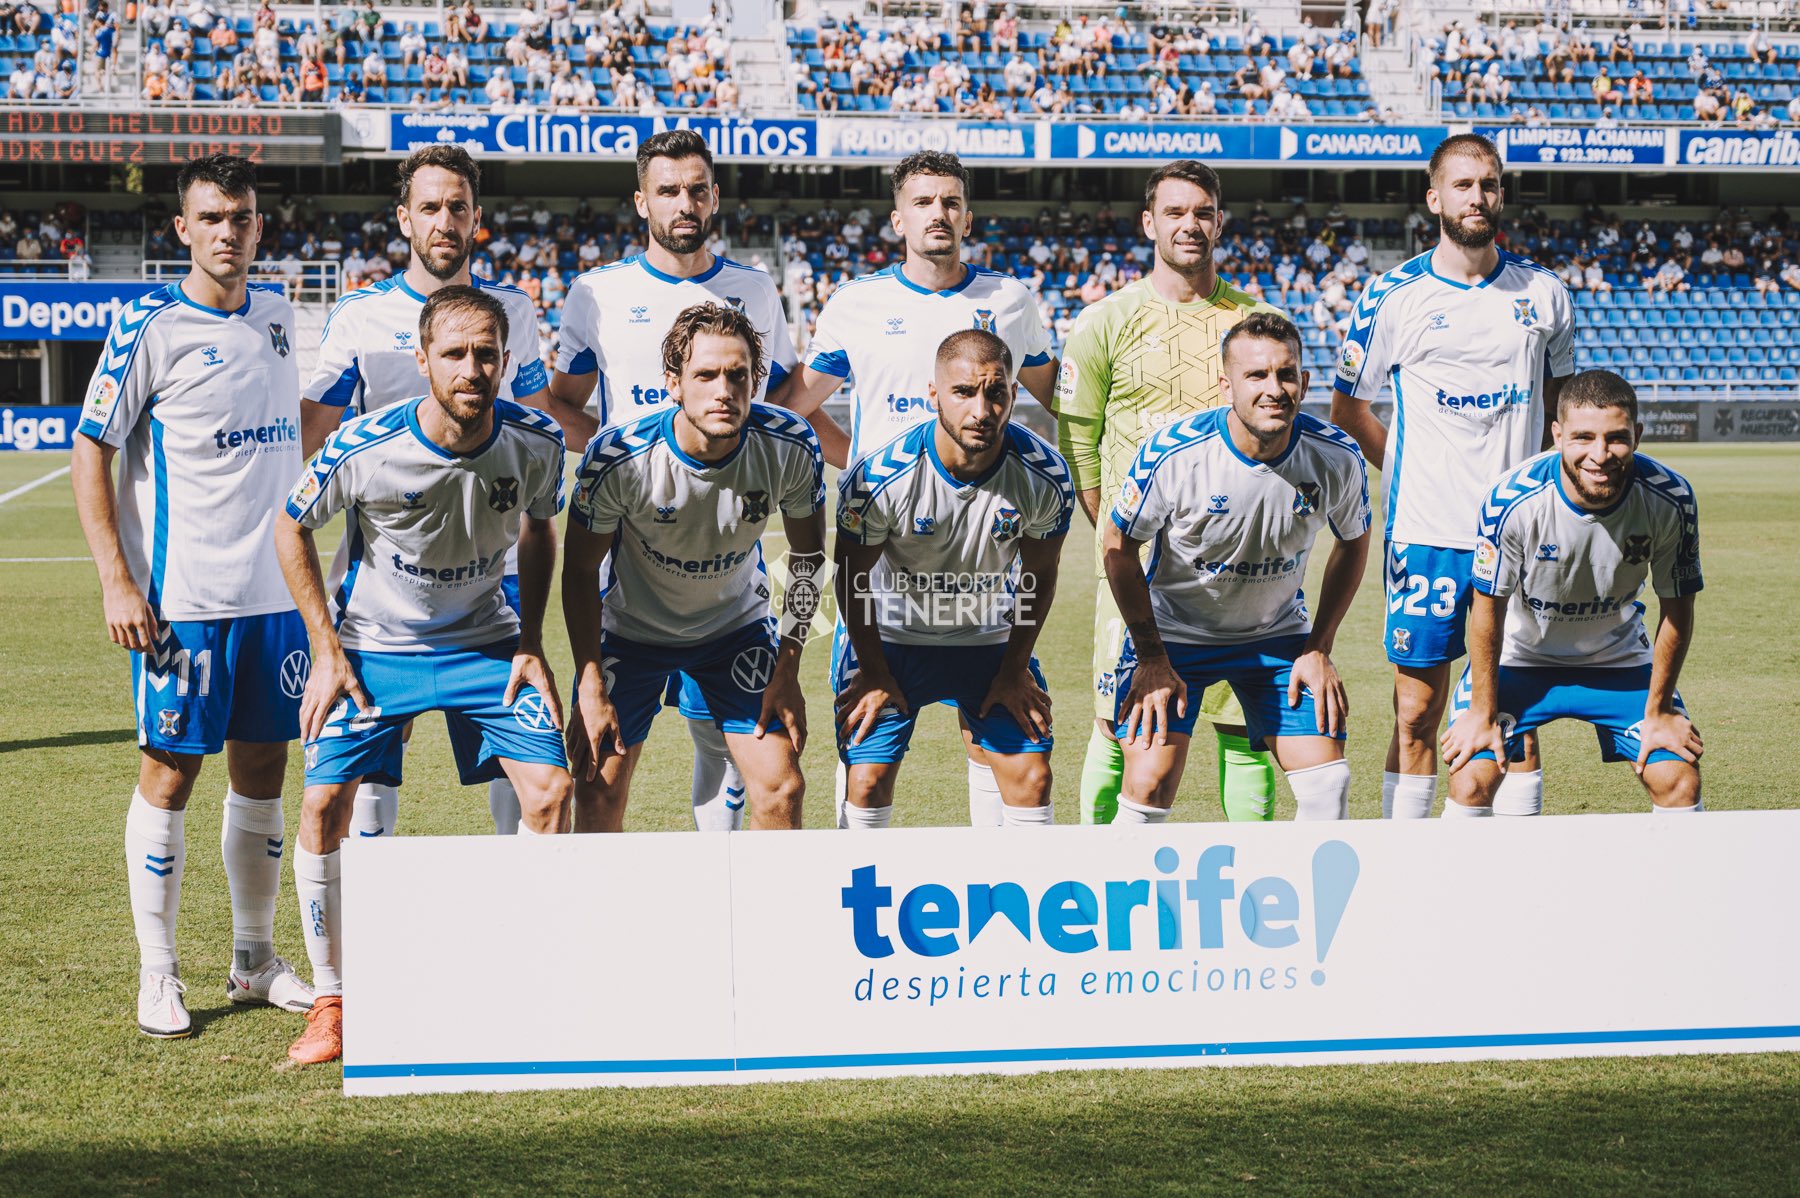 La 1ª vuelta del CD Tenerife: Con 38 puntos, la mejor en 2ª A desde la 2000-2001